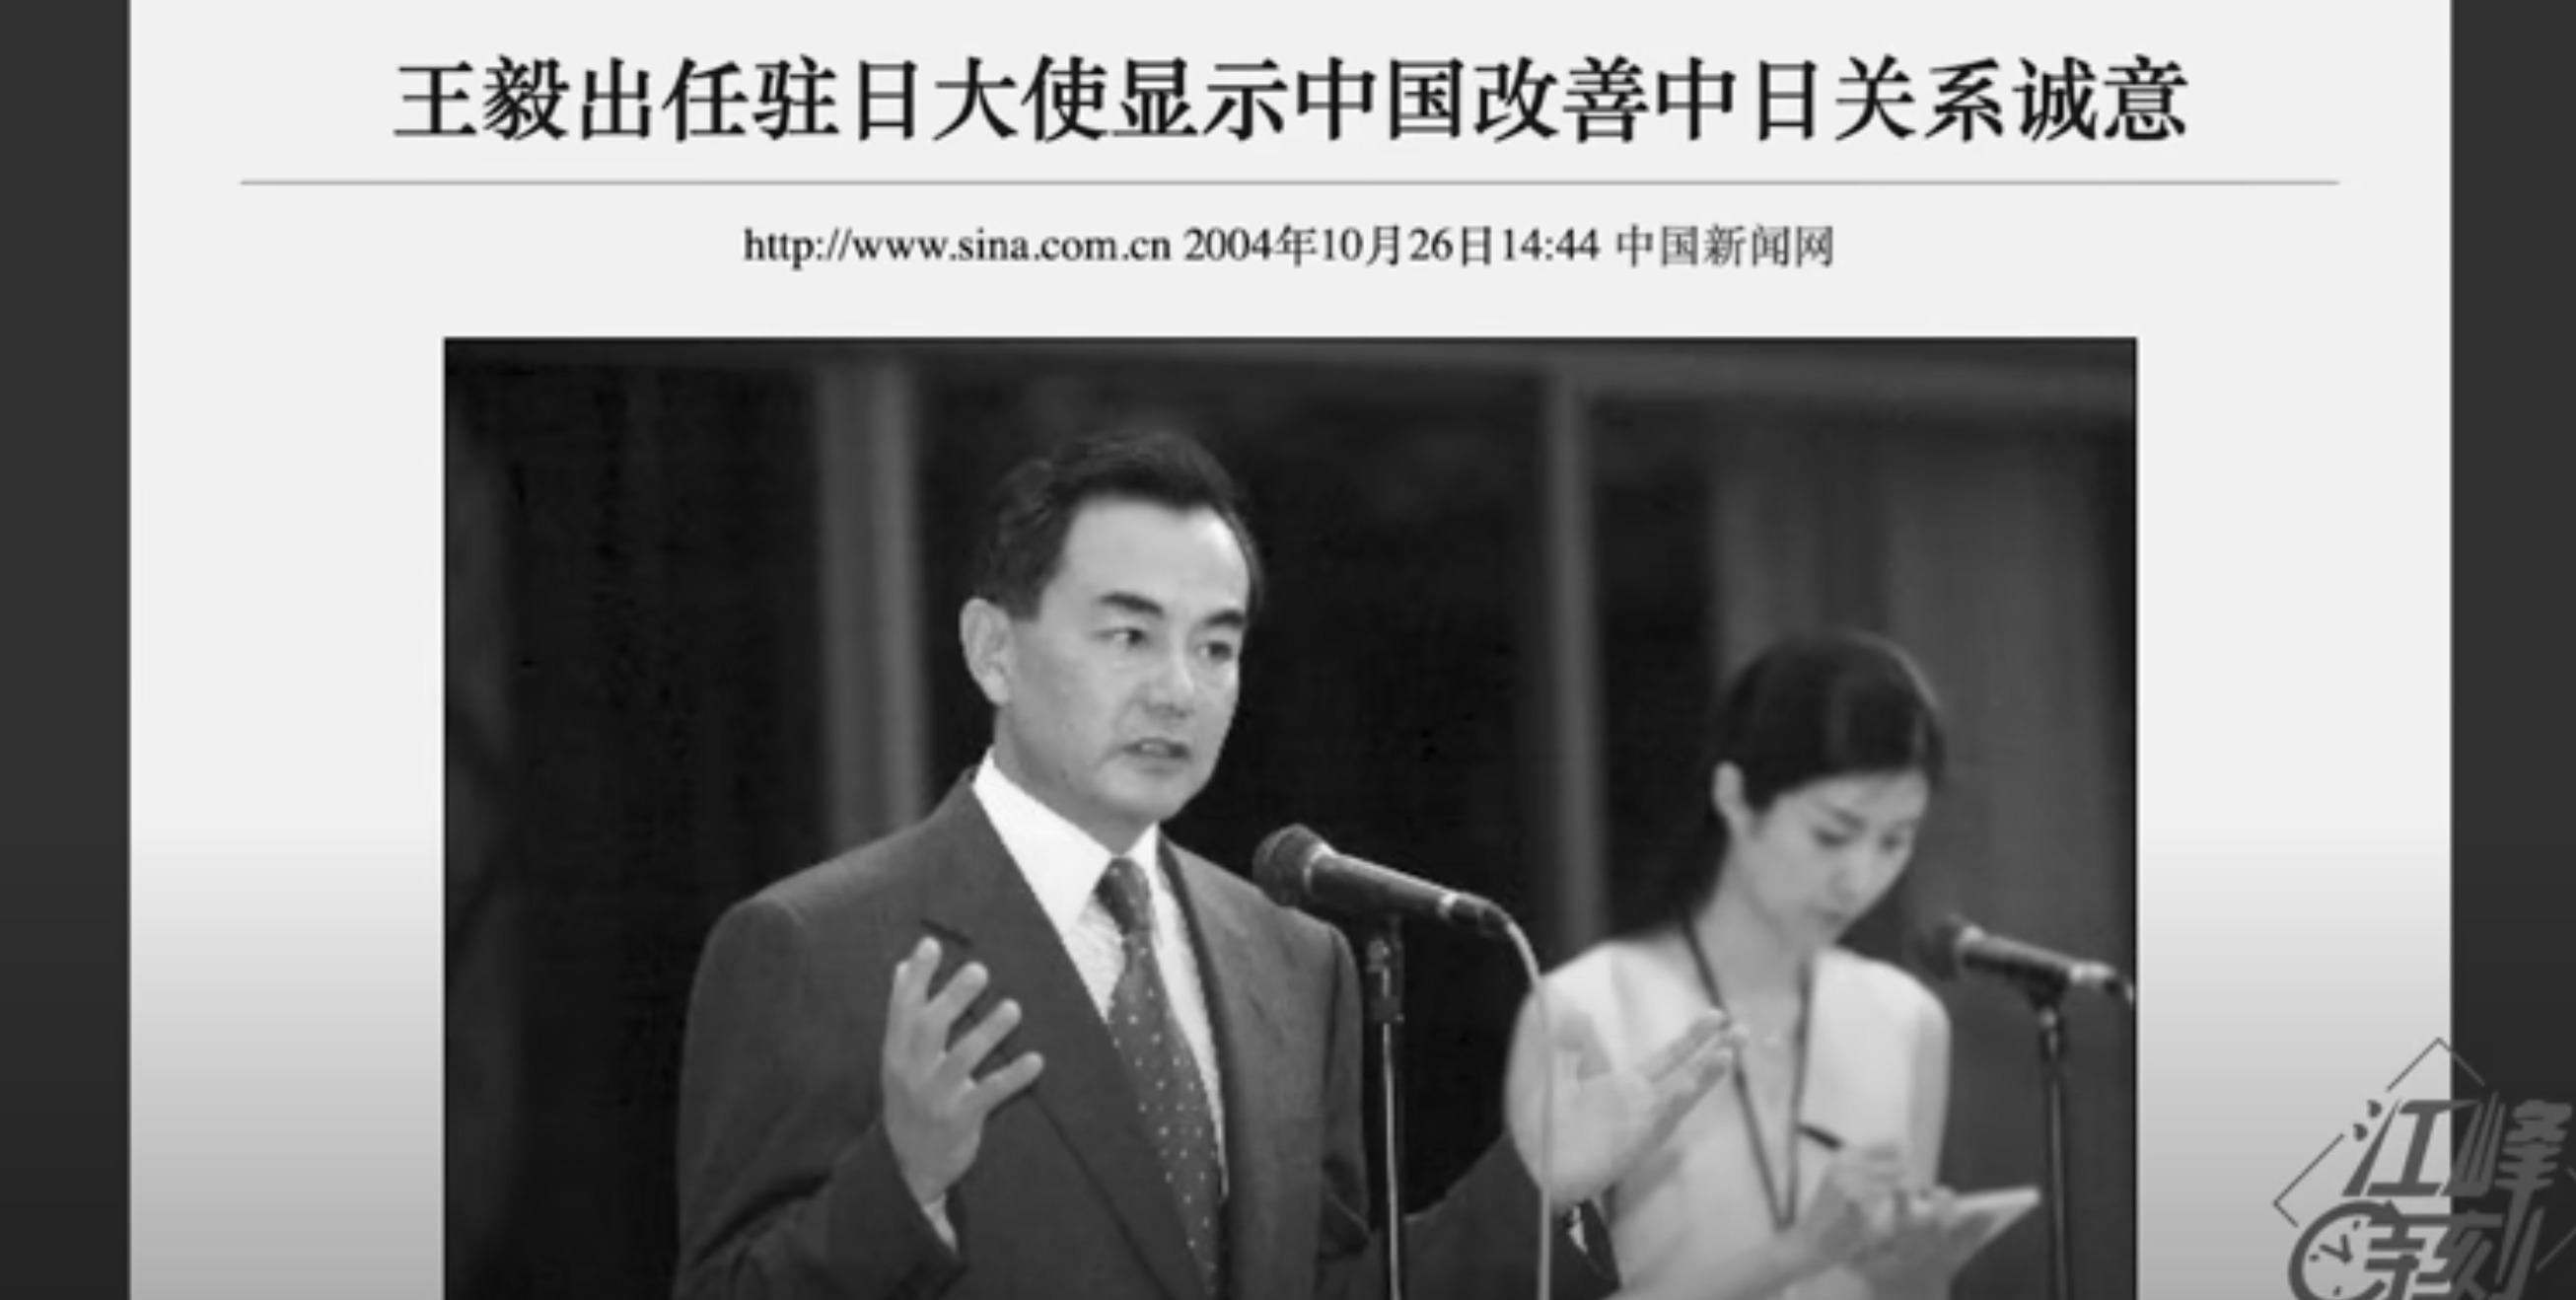 Photos of Wang Yi when he was the ambassador to Japan